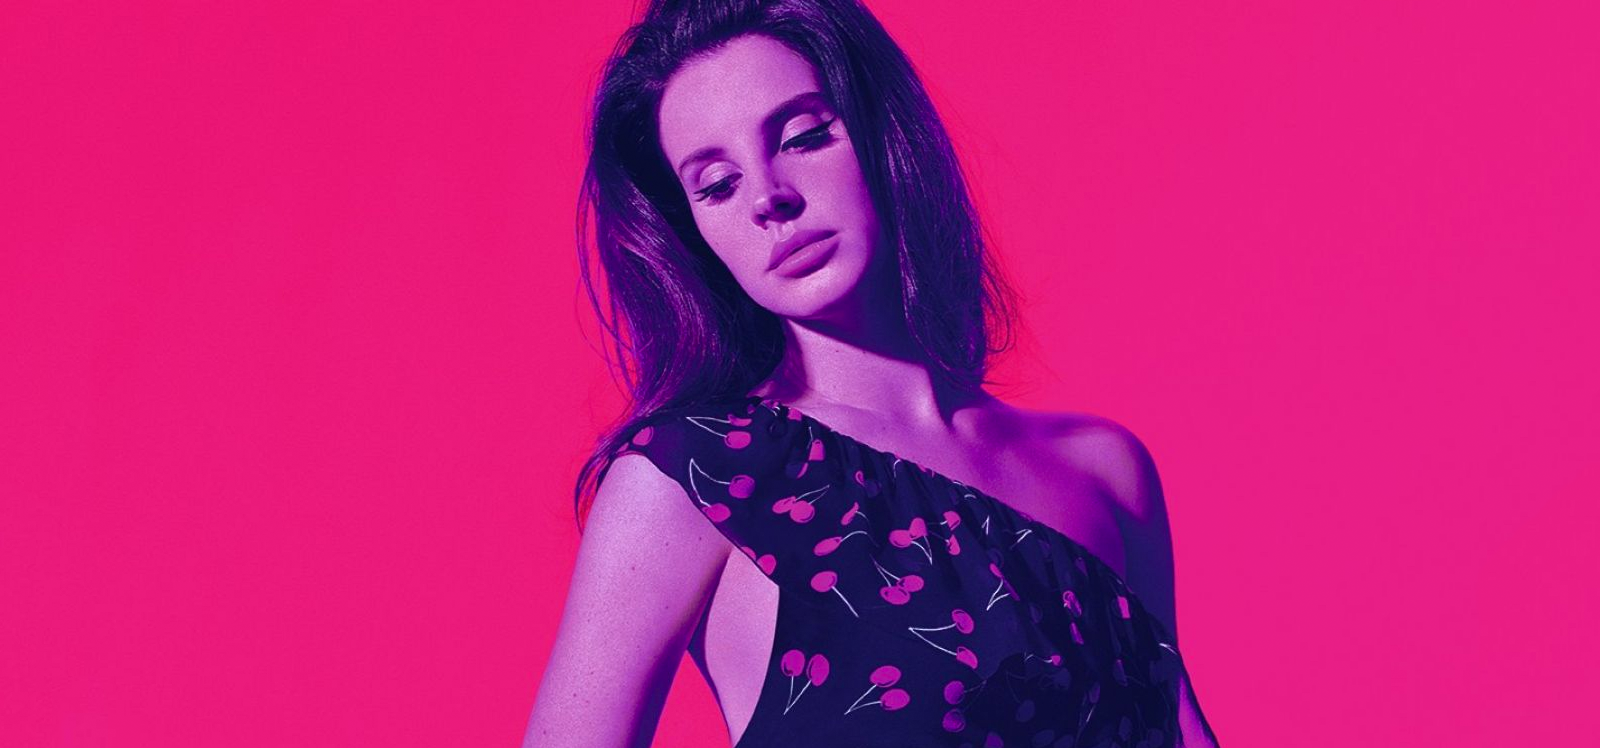 Lana Del Rey é a atração do Lollapalooza mais comentada pelo Twitter no